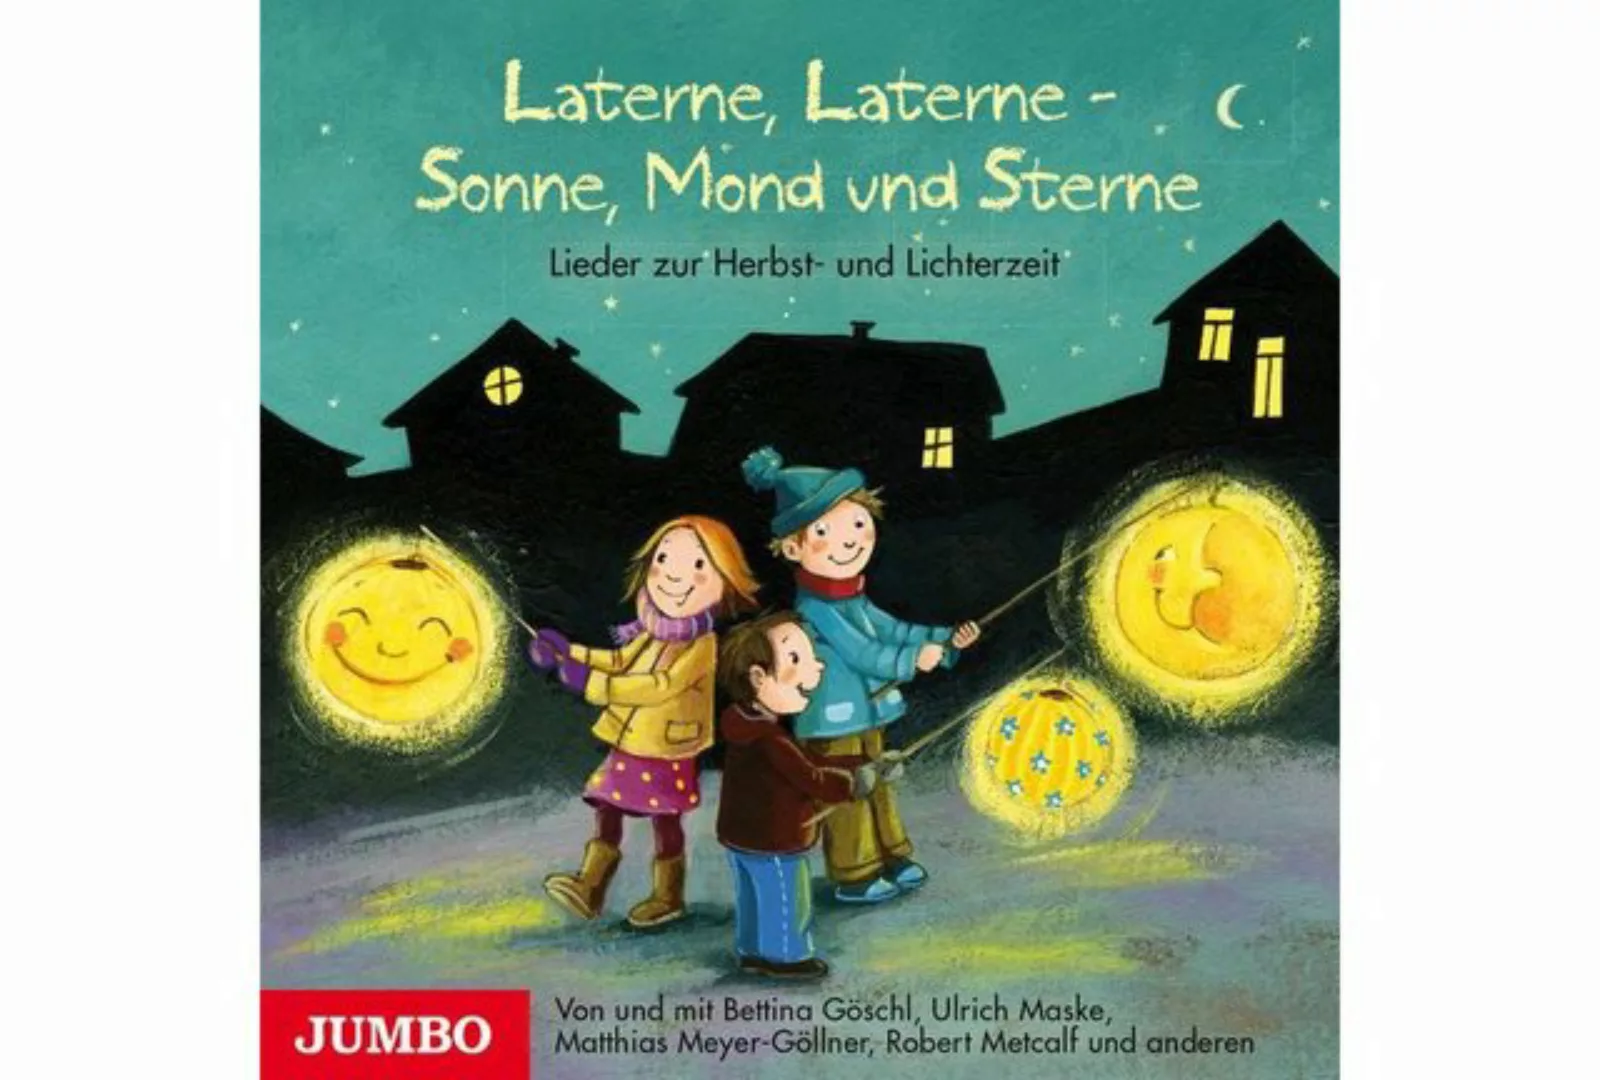 Jumbo Hörspiel-CD Laterne, Laterne - Sonne, Mond und Sterne günstig online kaufen